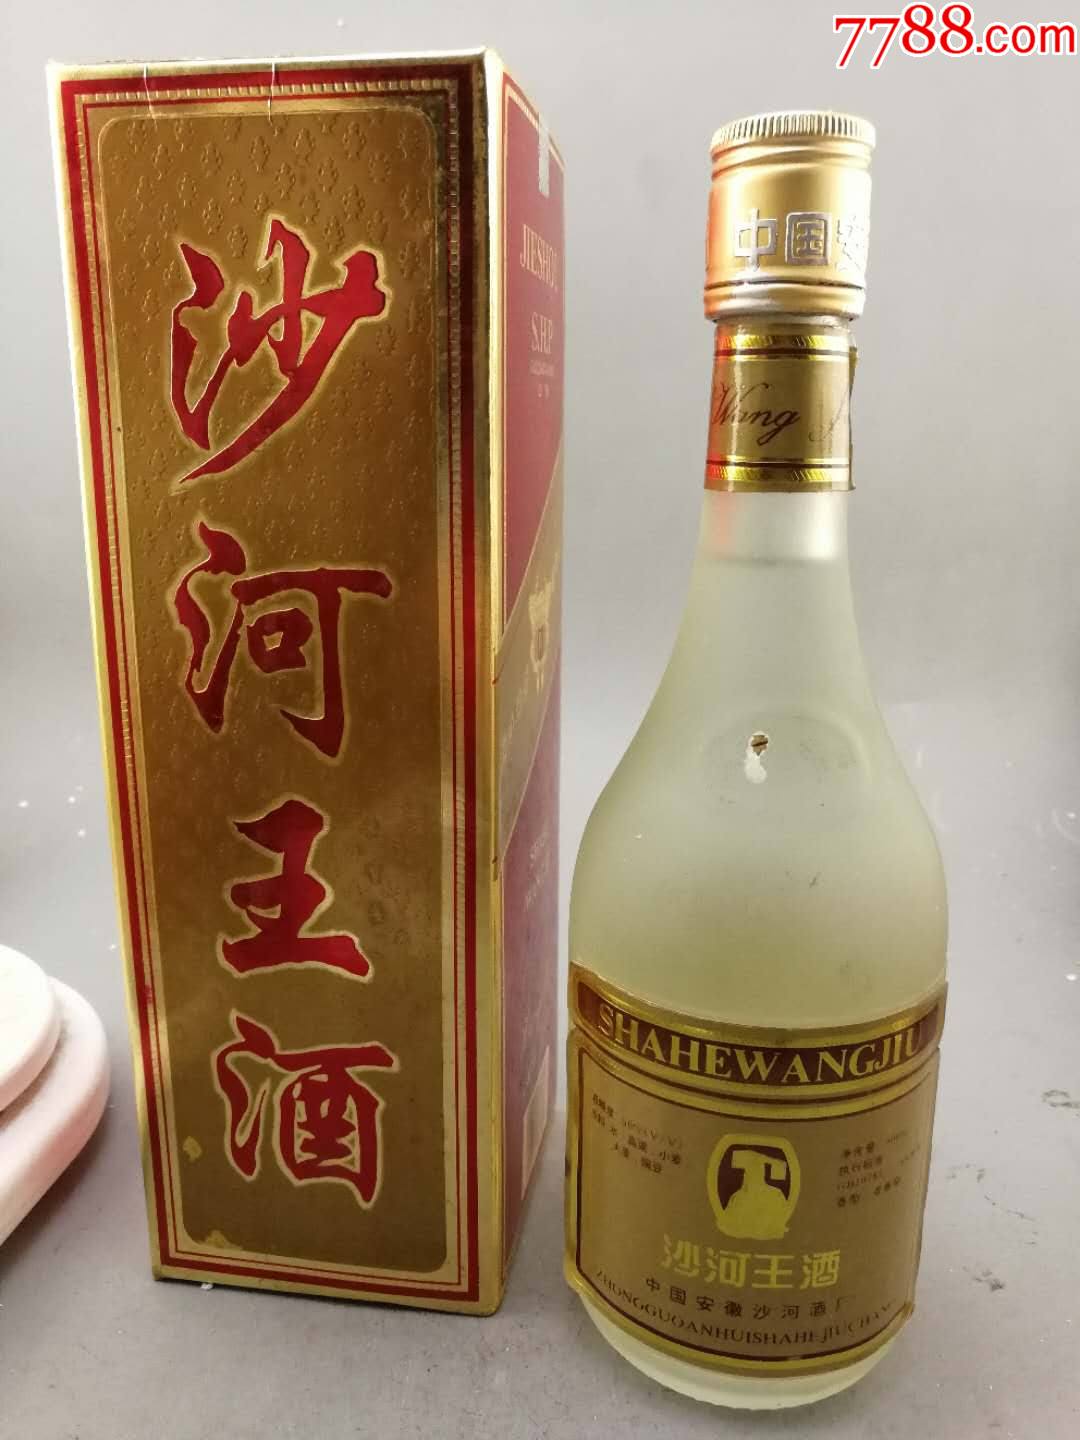 沙河王酒蒋醒光图片